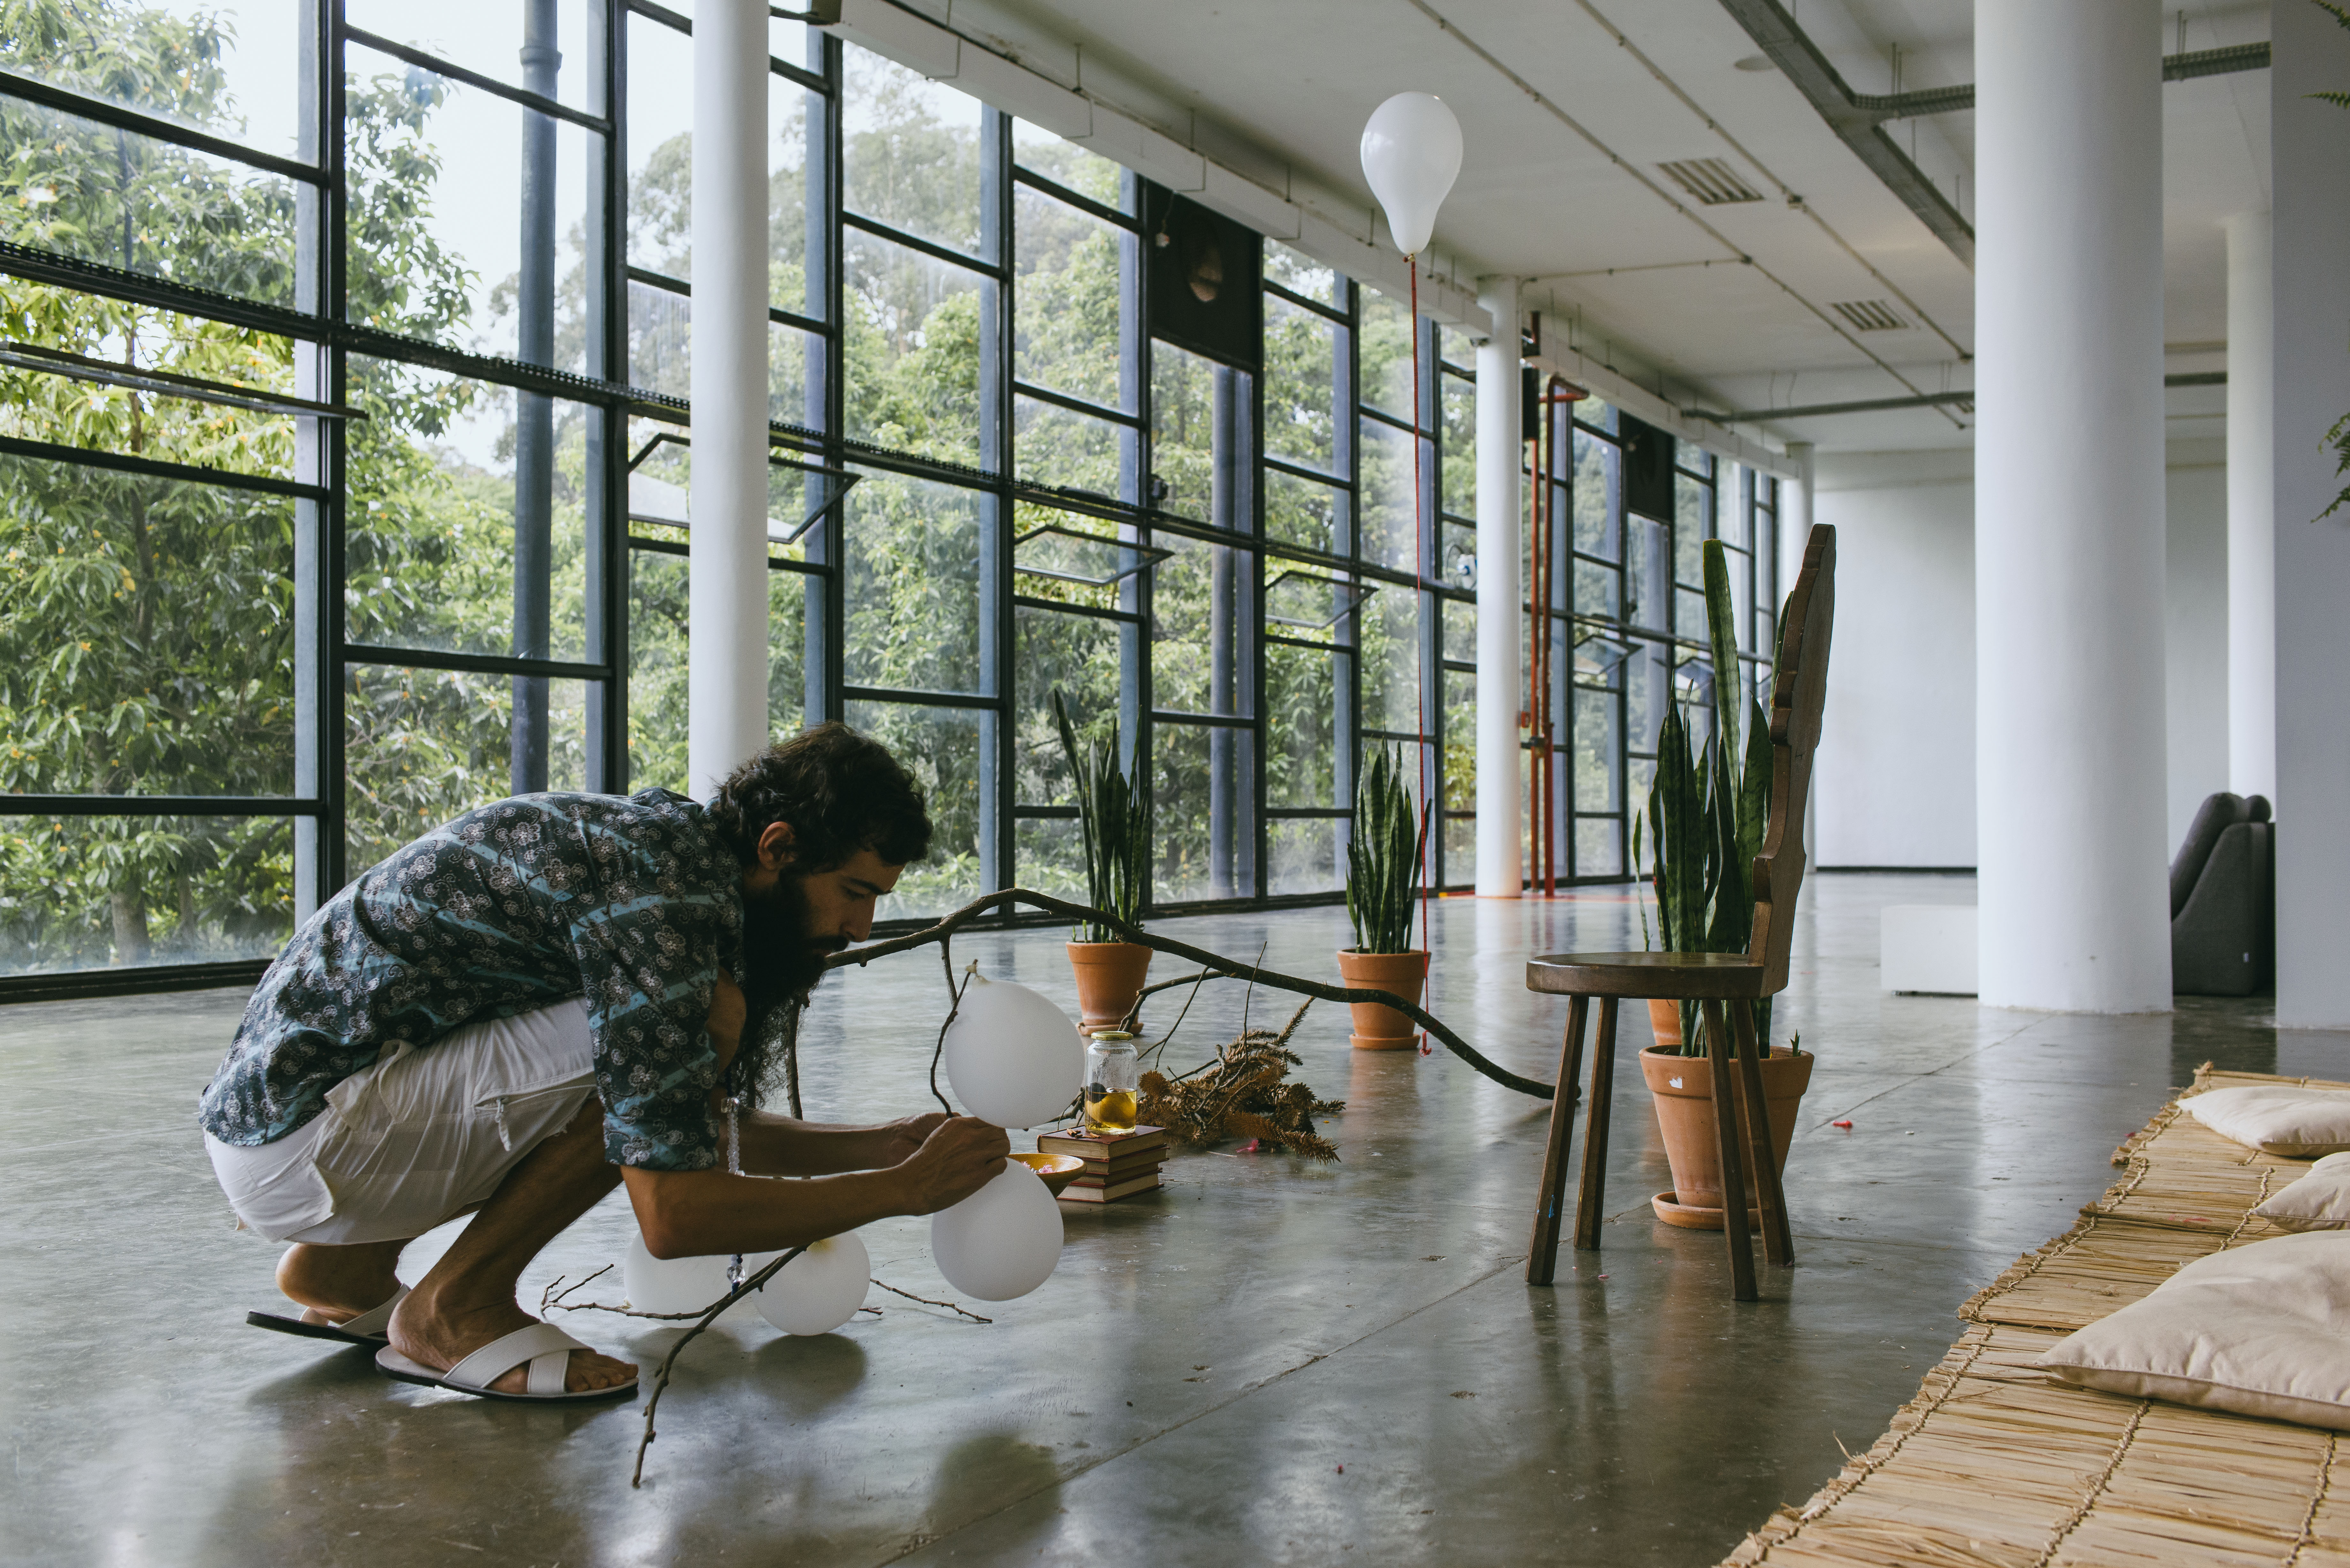 Performance de Arthur Scovino durante a última edição da Bienal, em 2014